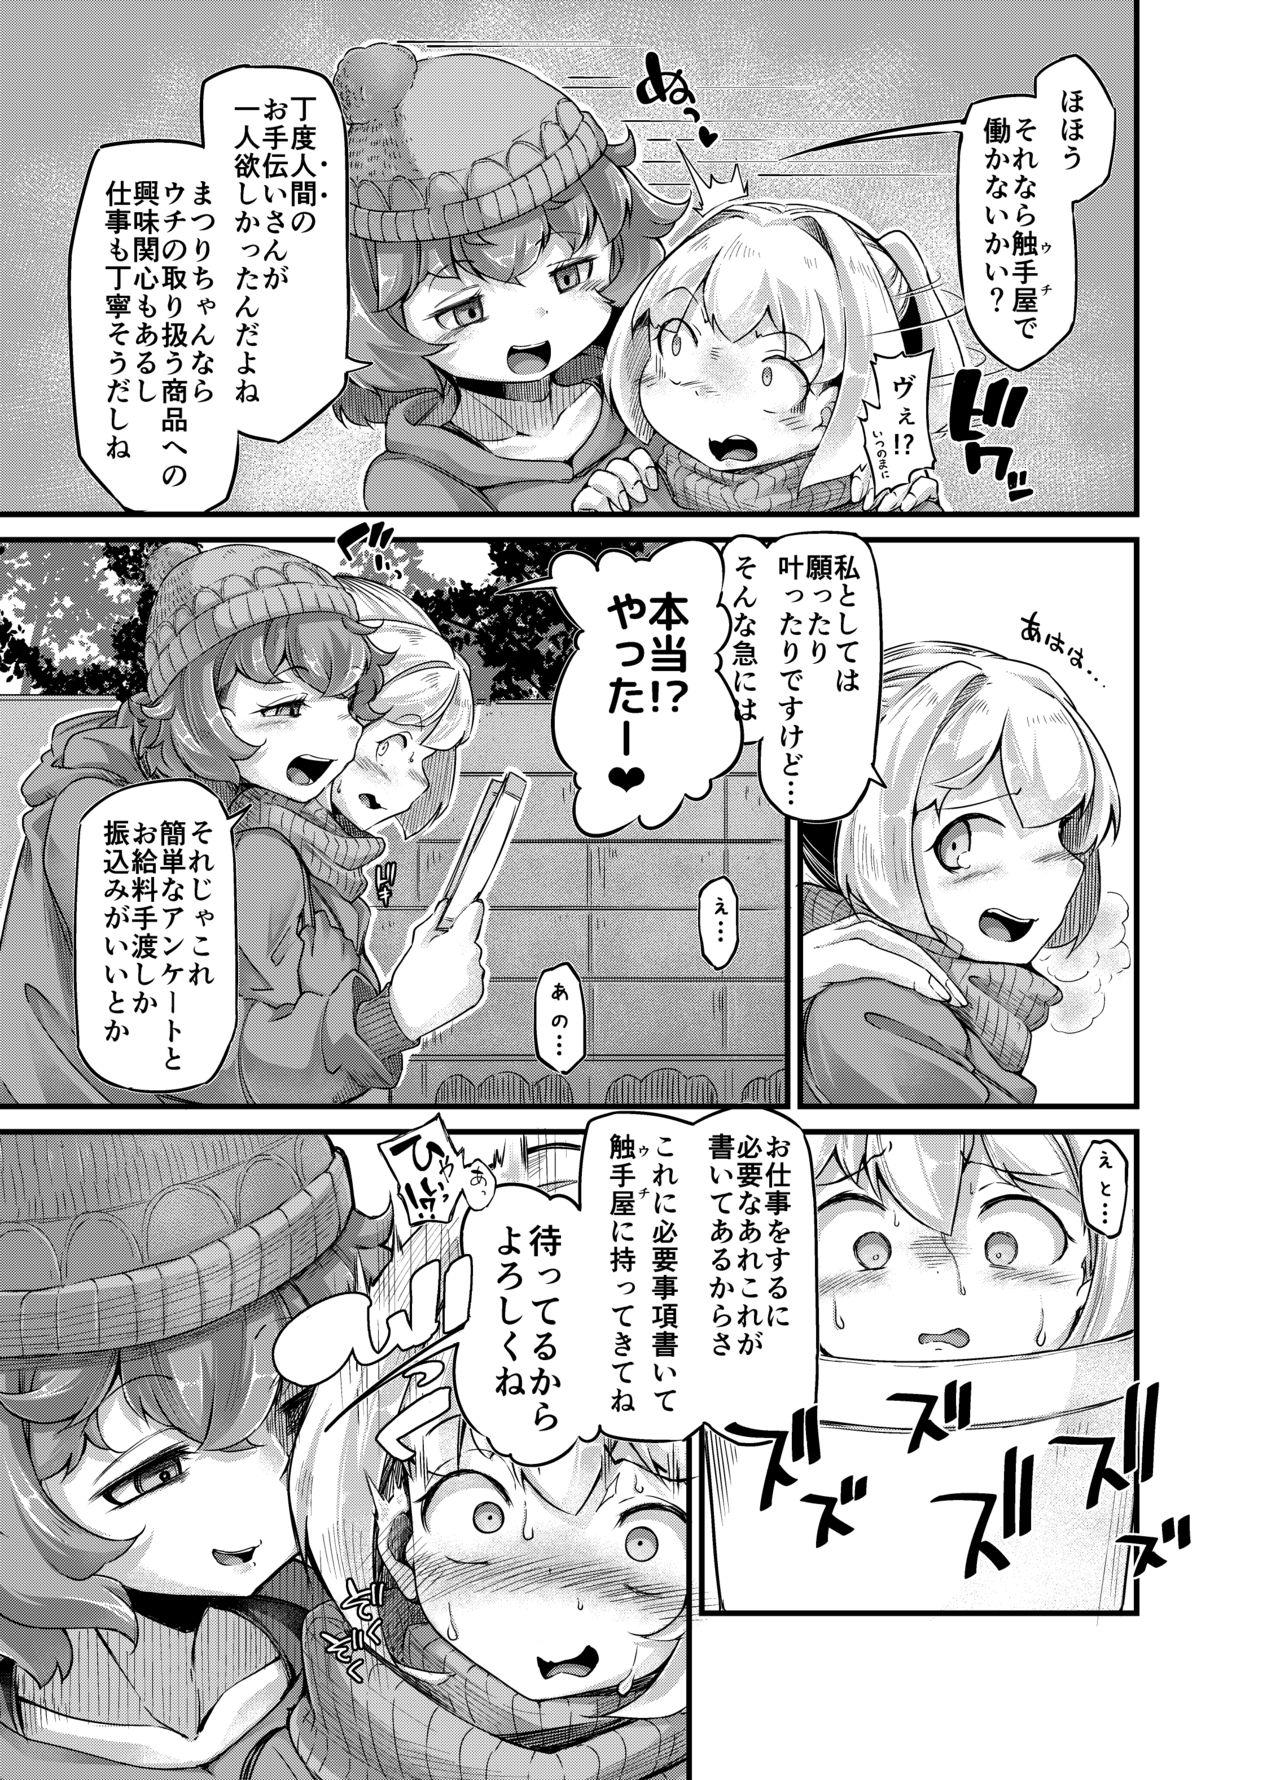 Candid Anata no Machi no Shokushuya-san 4 - Original Action - Page 9